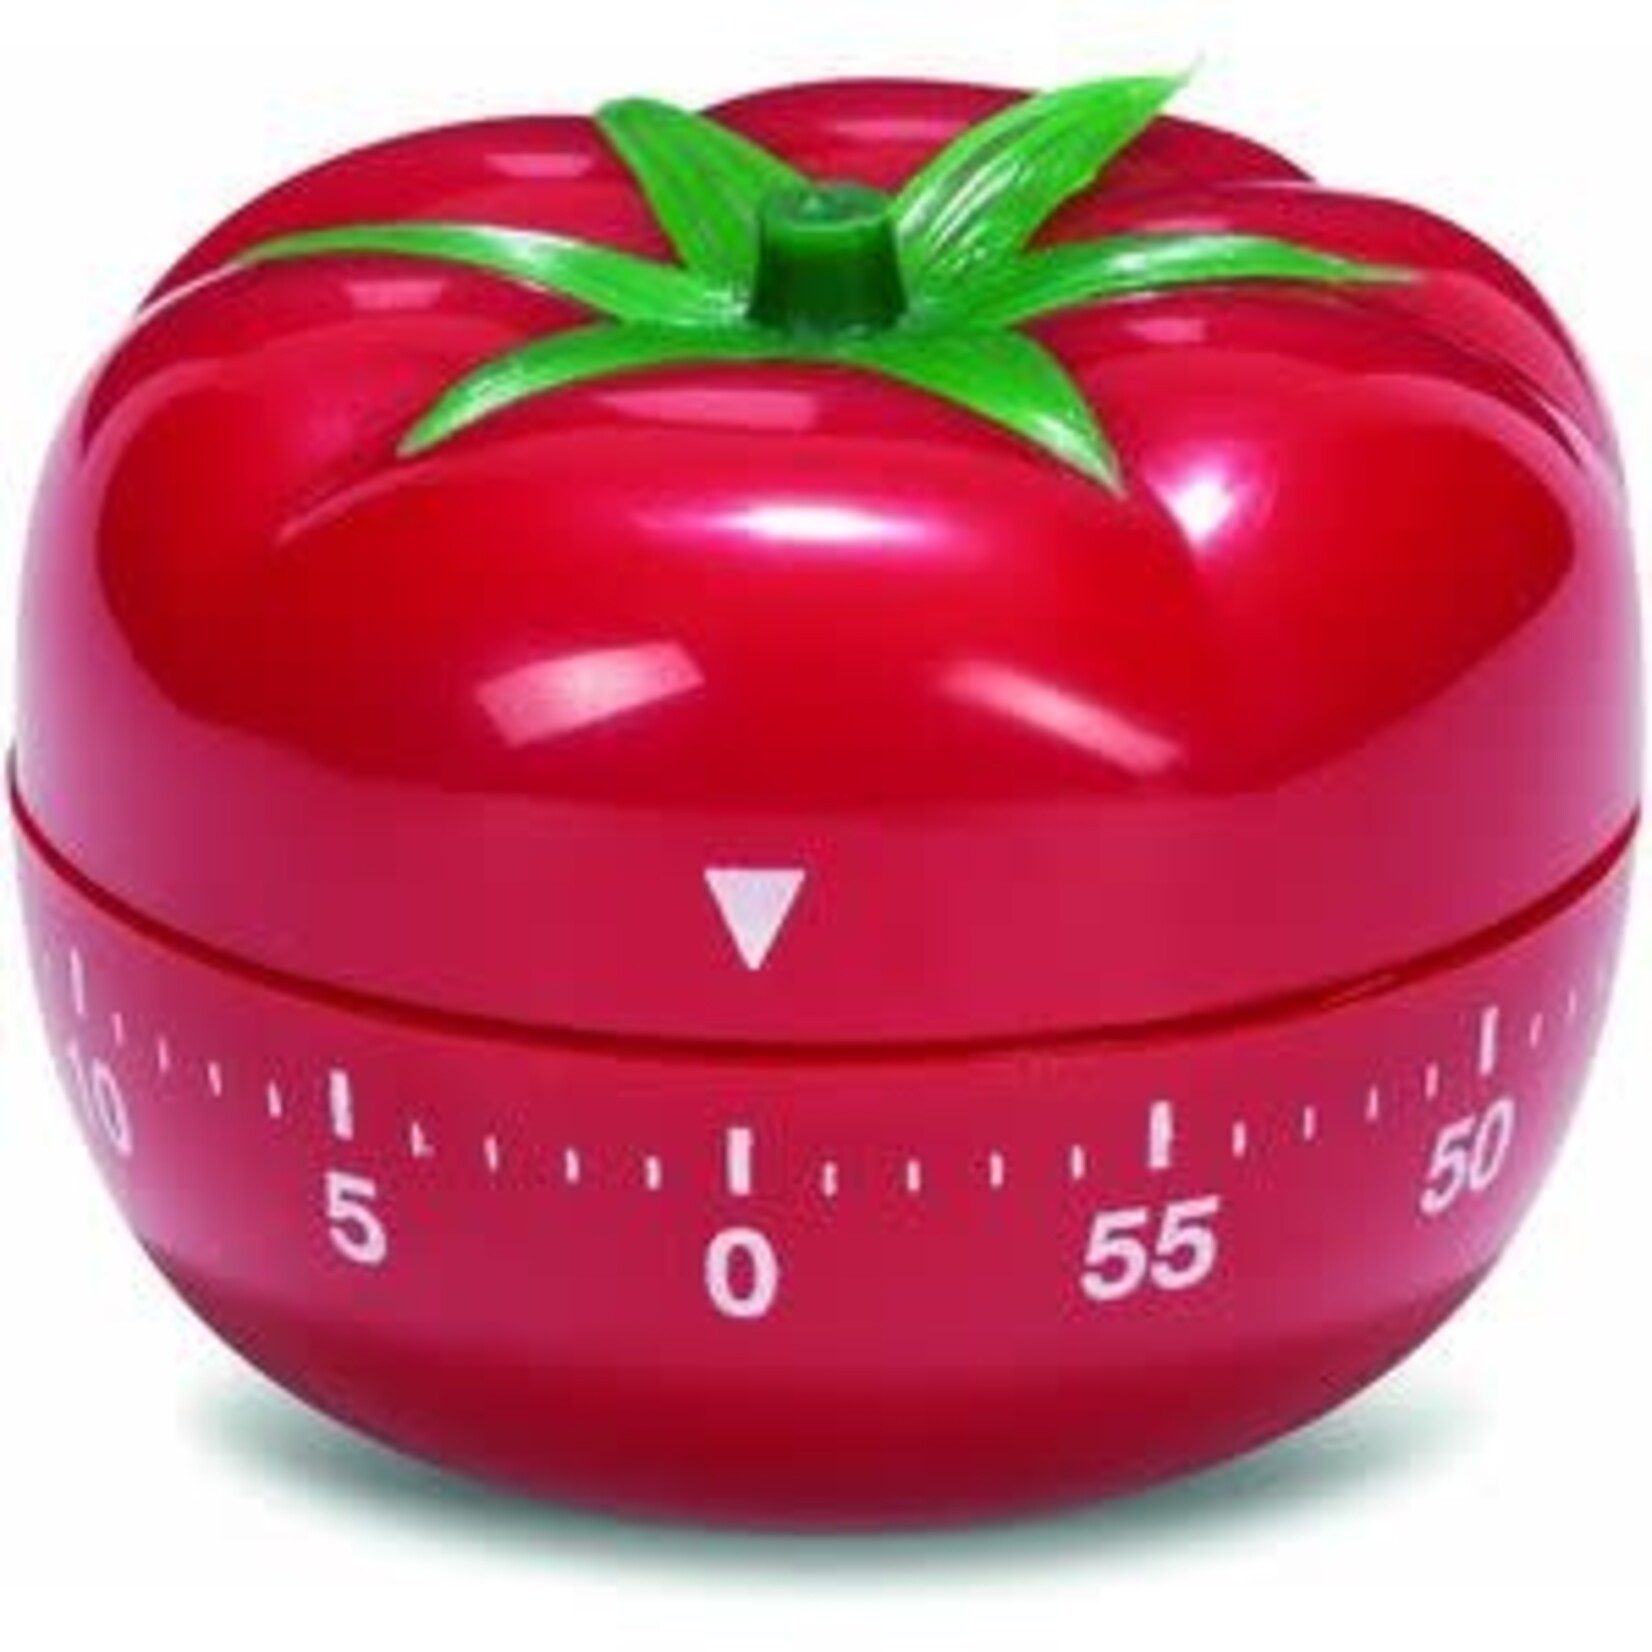 Patisse tomaat kookwekker Patisse 10056